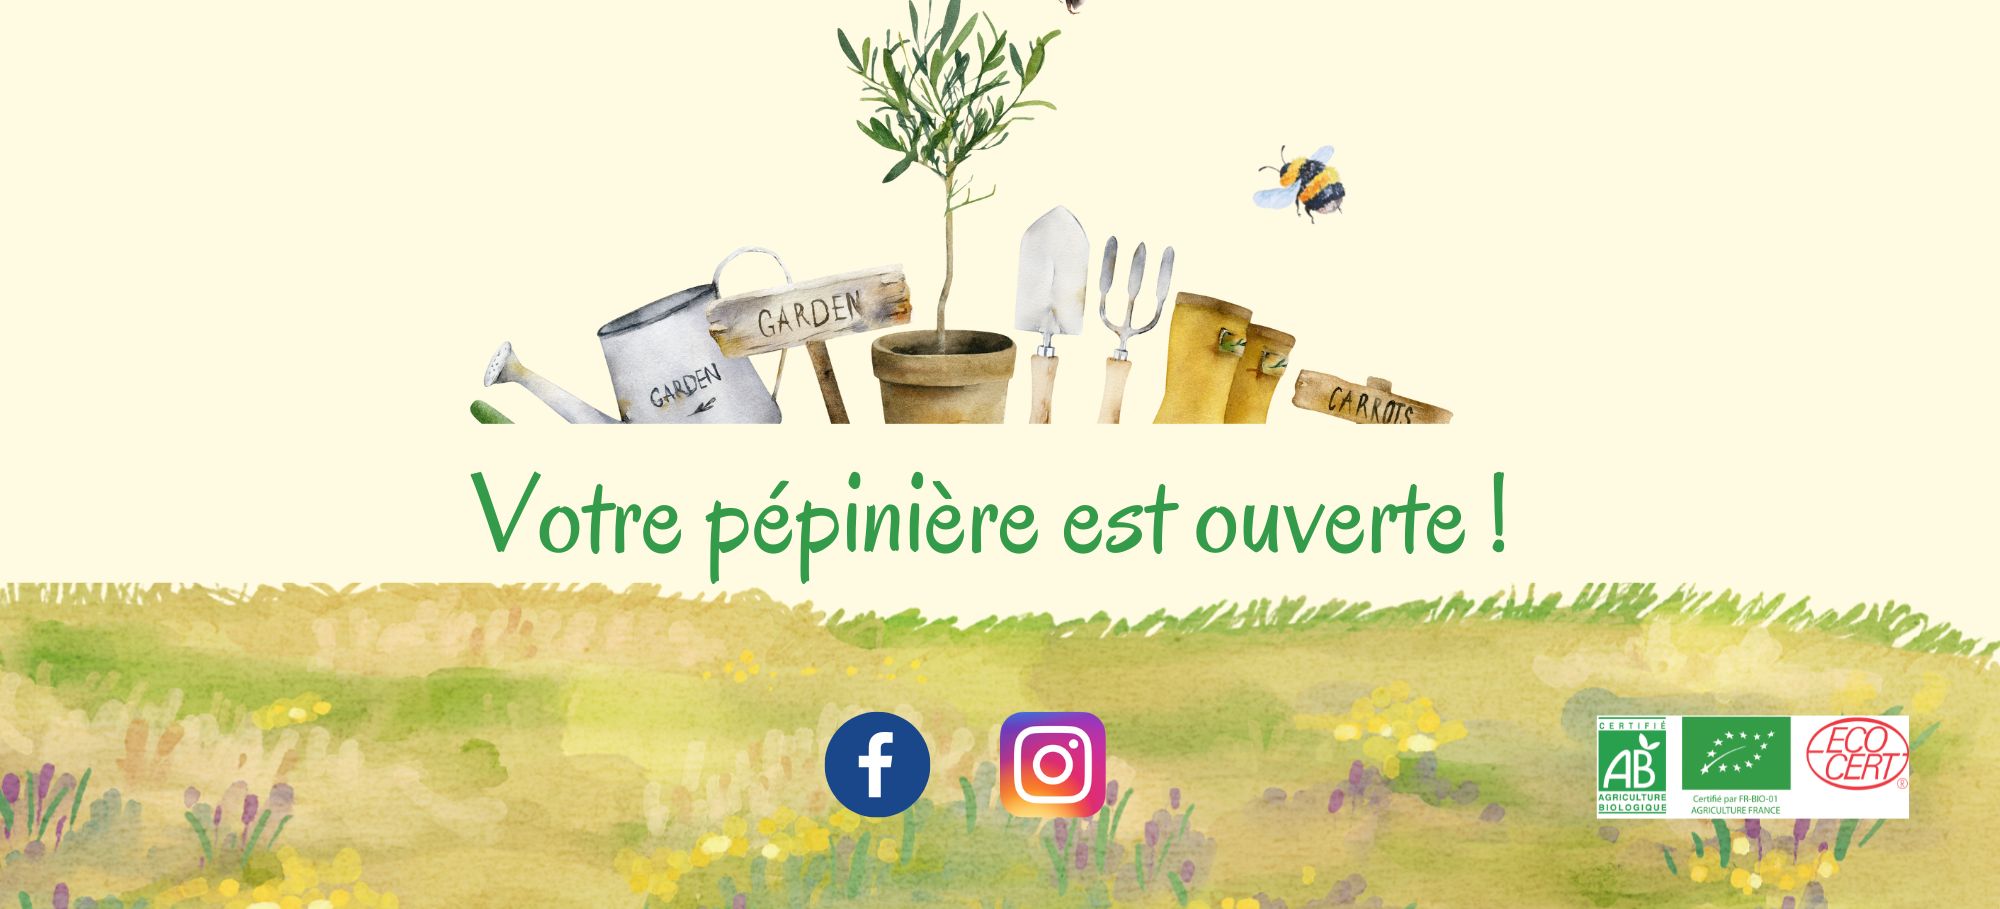 https://jardindeboheme.fr/wp-content/uploads/2023/02/Les-fraisiers-vous-attendent-a-la-pepiniere-22-×-10-cm-8.jpg